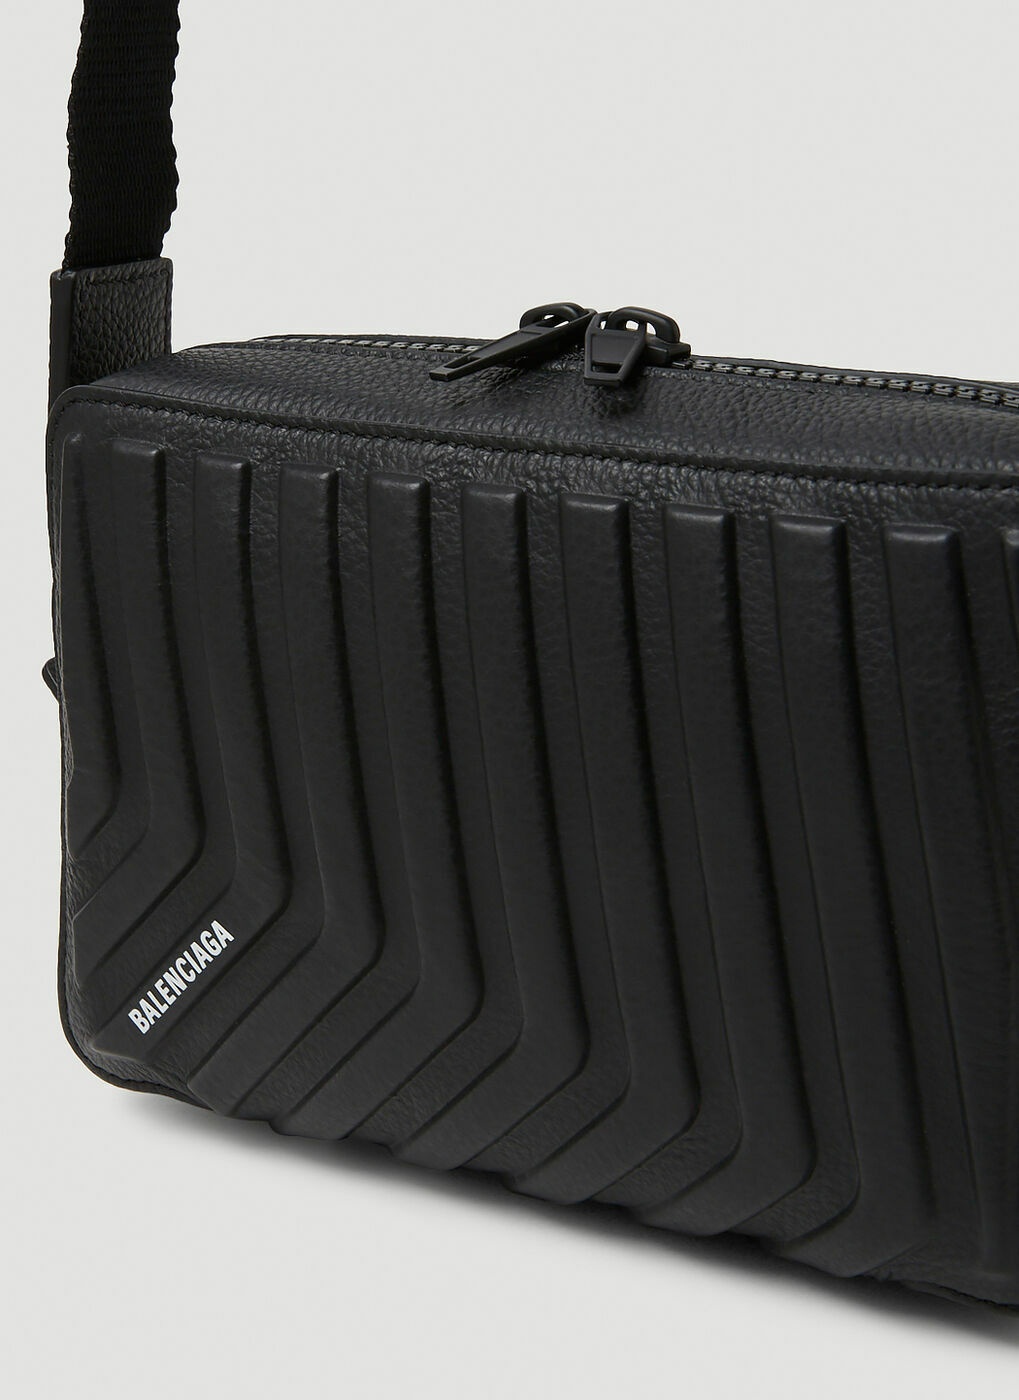 Car Leather Crossbody Bag in Black - Balenciaga